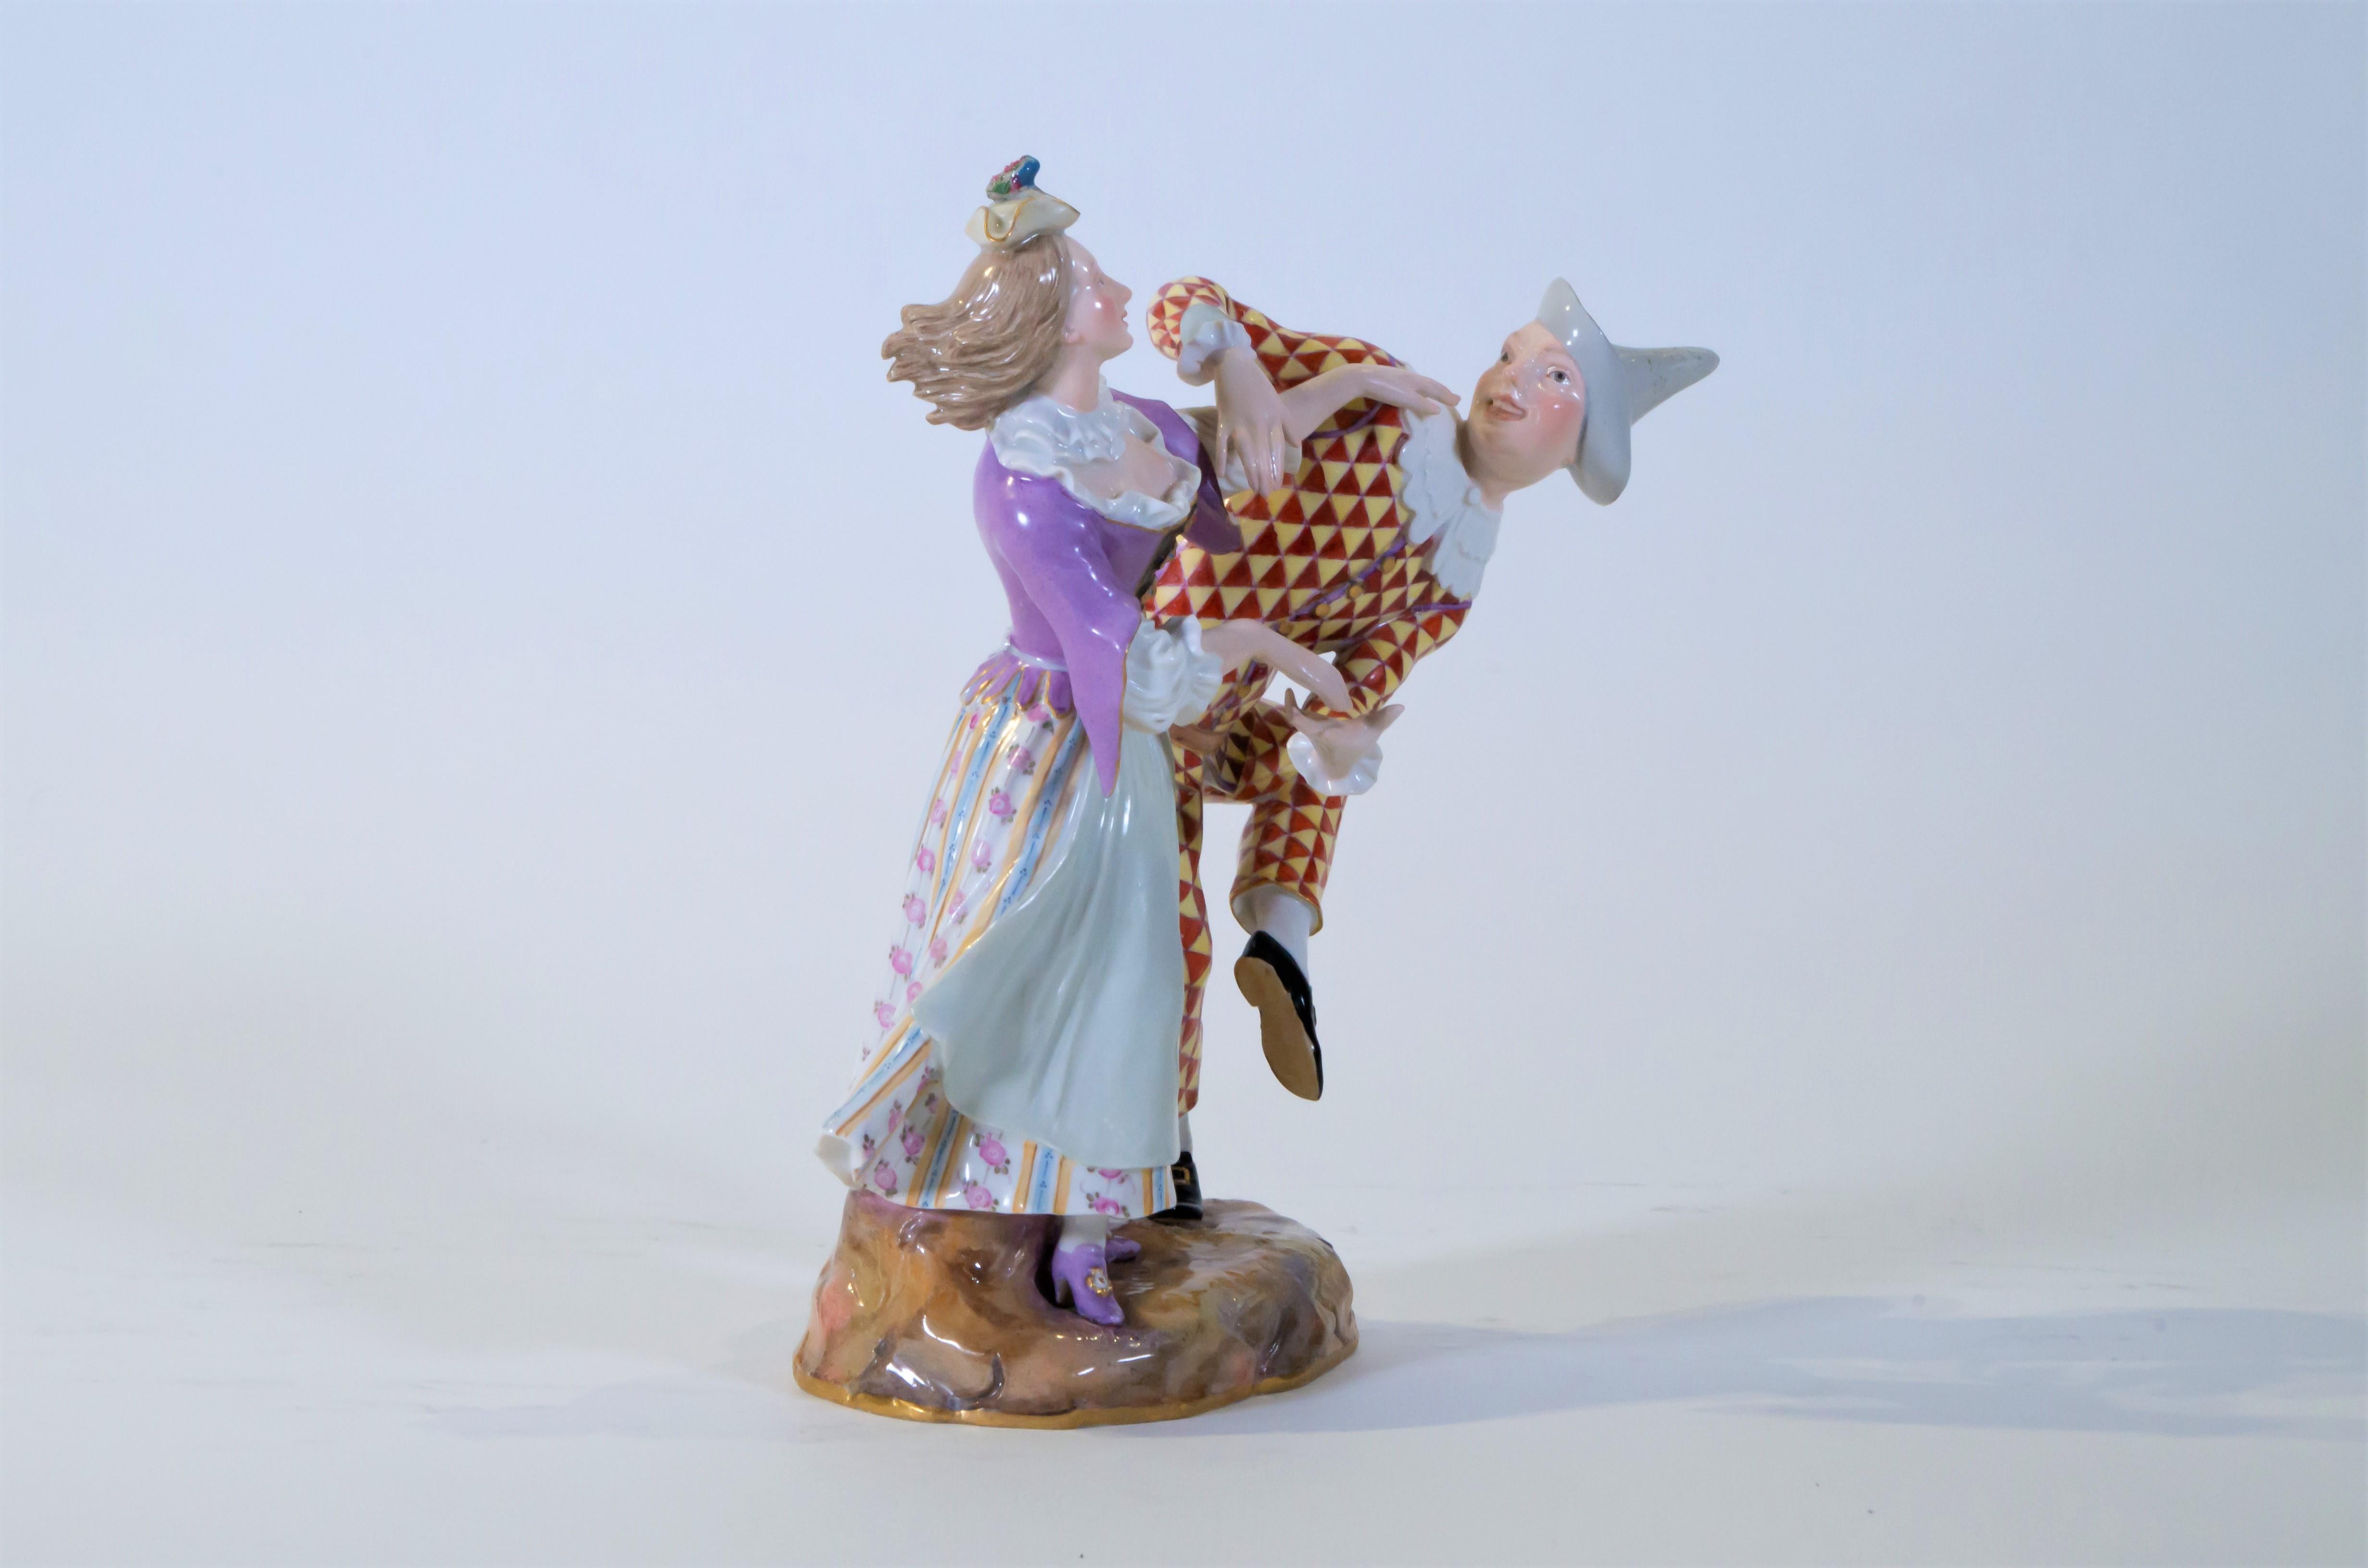 Groupe en porcelaine de Meissen du XIXe siècle représentant la Commedia Dell'arte, l'arlequin et l'ancolie dansant. Cet exemple représente Arlequin dansant avec l'ancolie d'une manière très ludique et vibrante. Arlequin est vu portant un costume